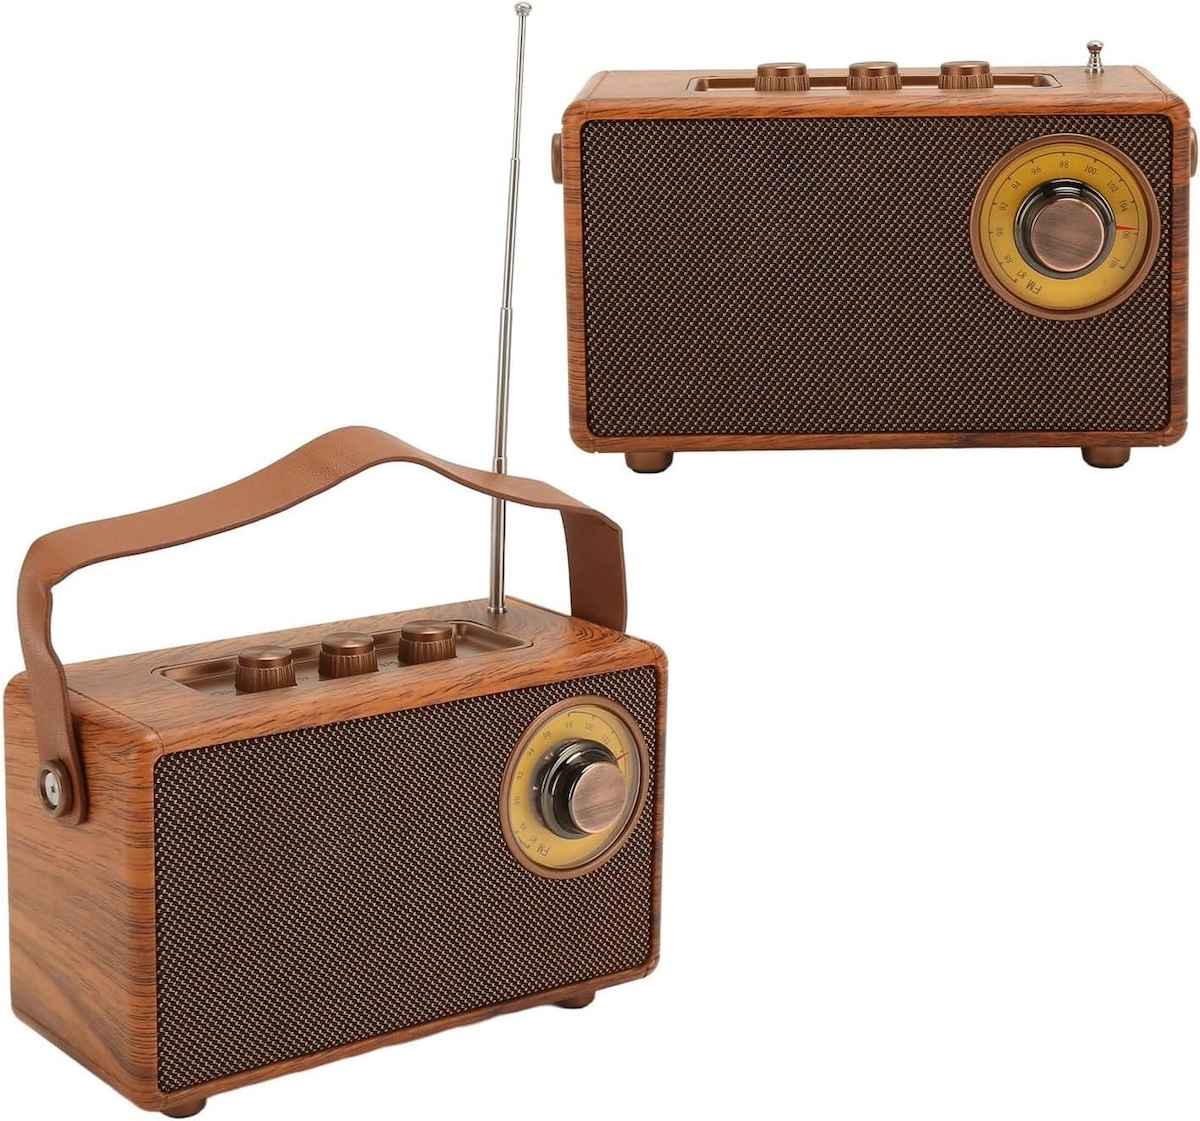 radio mini pequeño retro clásico estilo de madera